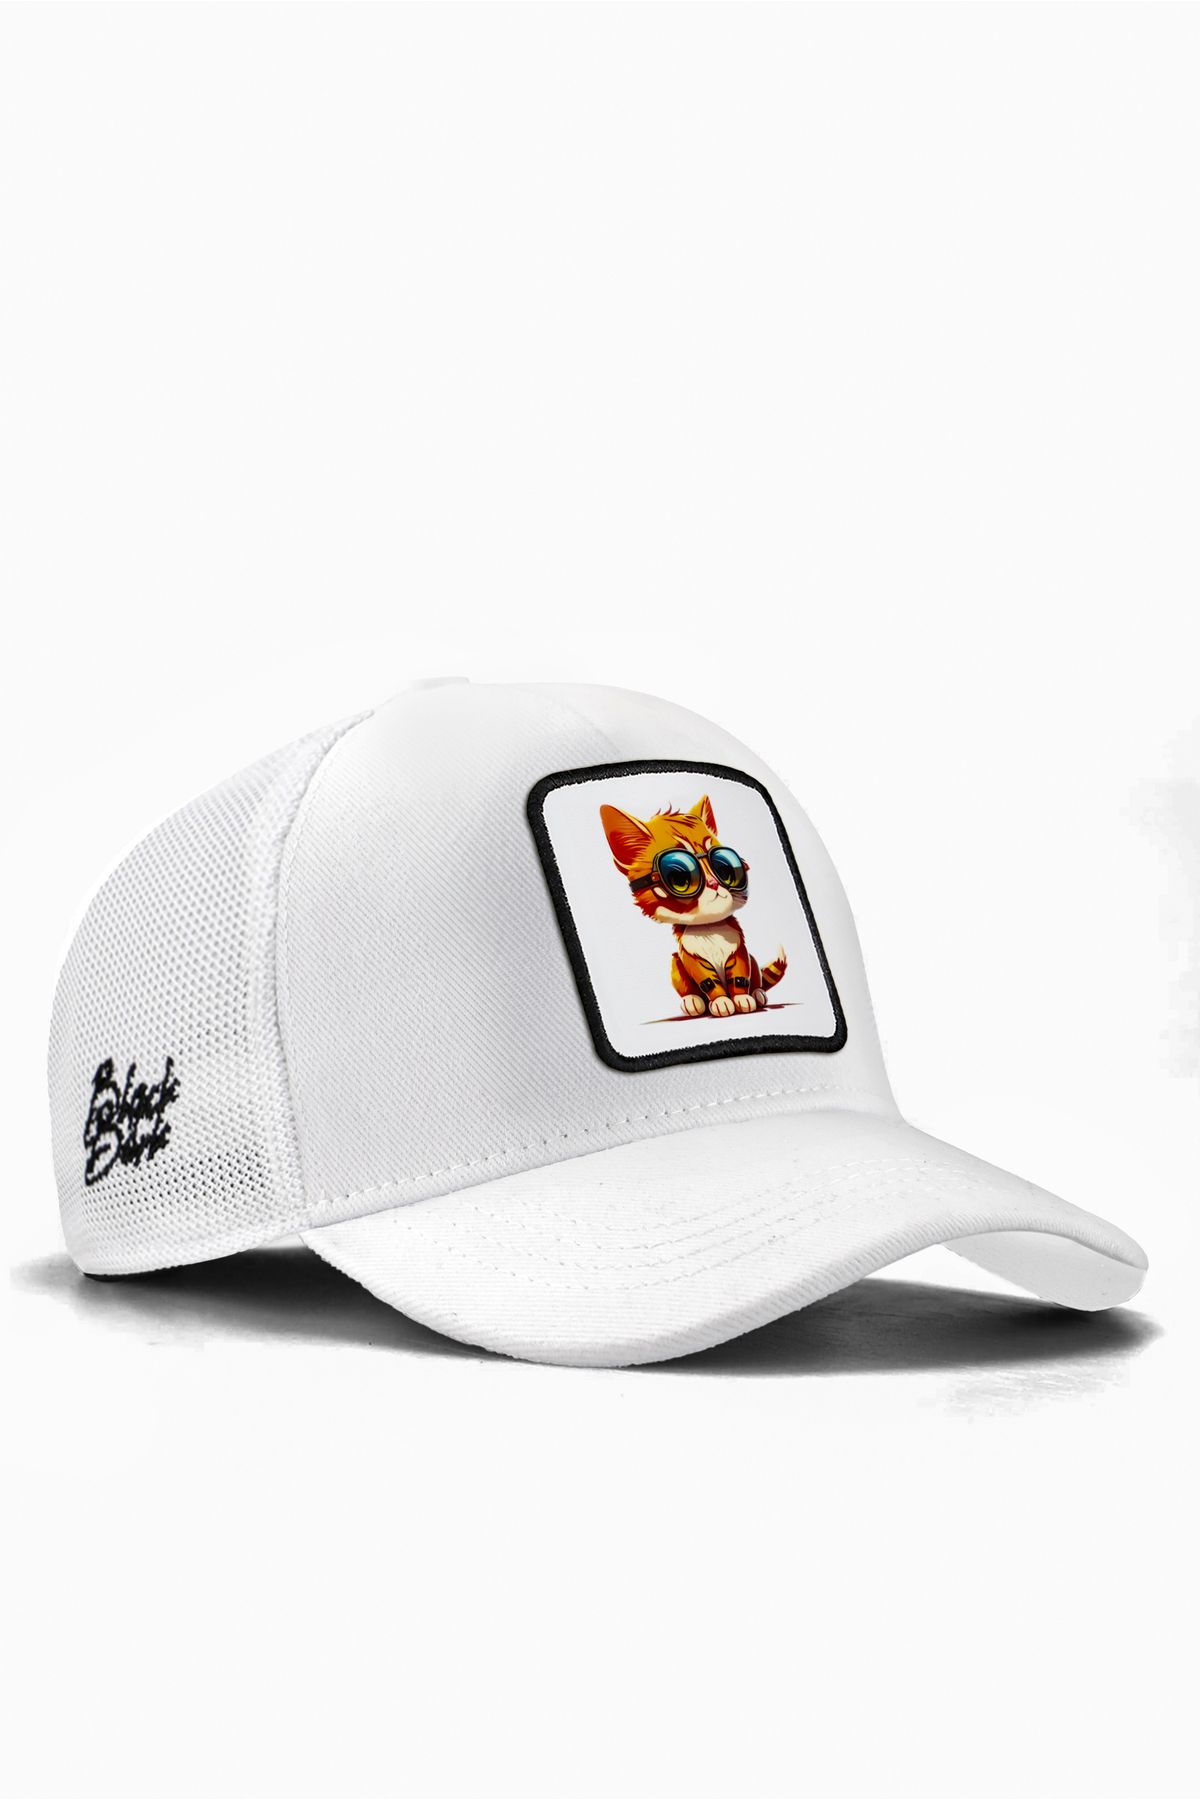 BlackBörk V1 Trucker Kids Kedi -4bs Kod Logolu Unisex Beyaz Çocuk Şapka (CAP)